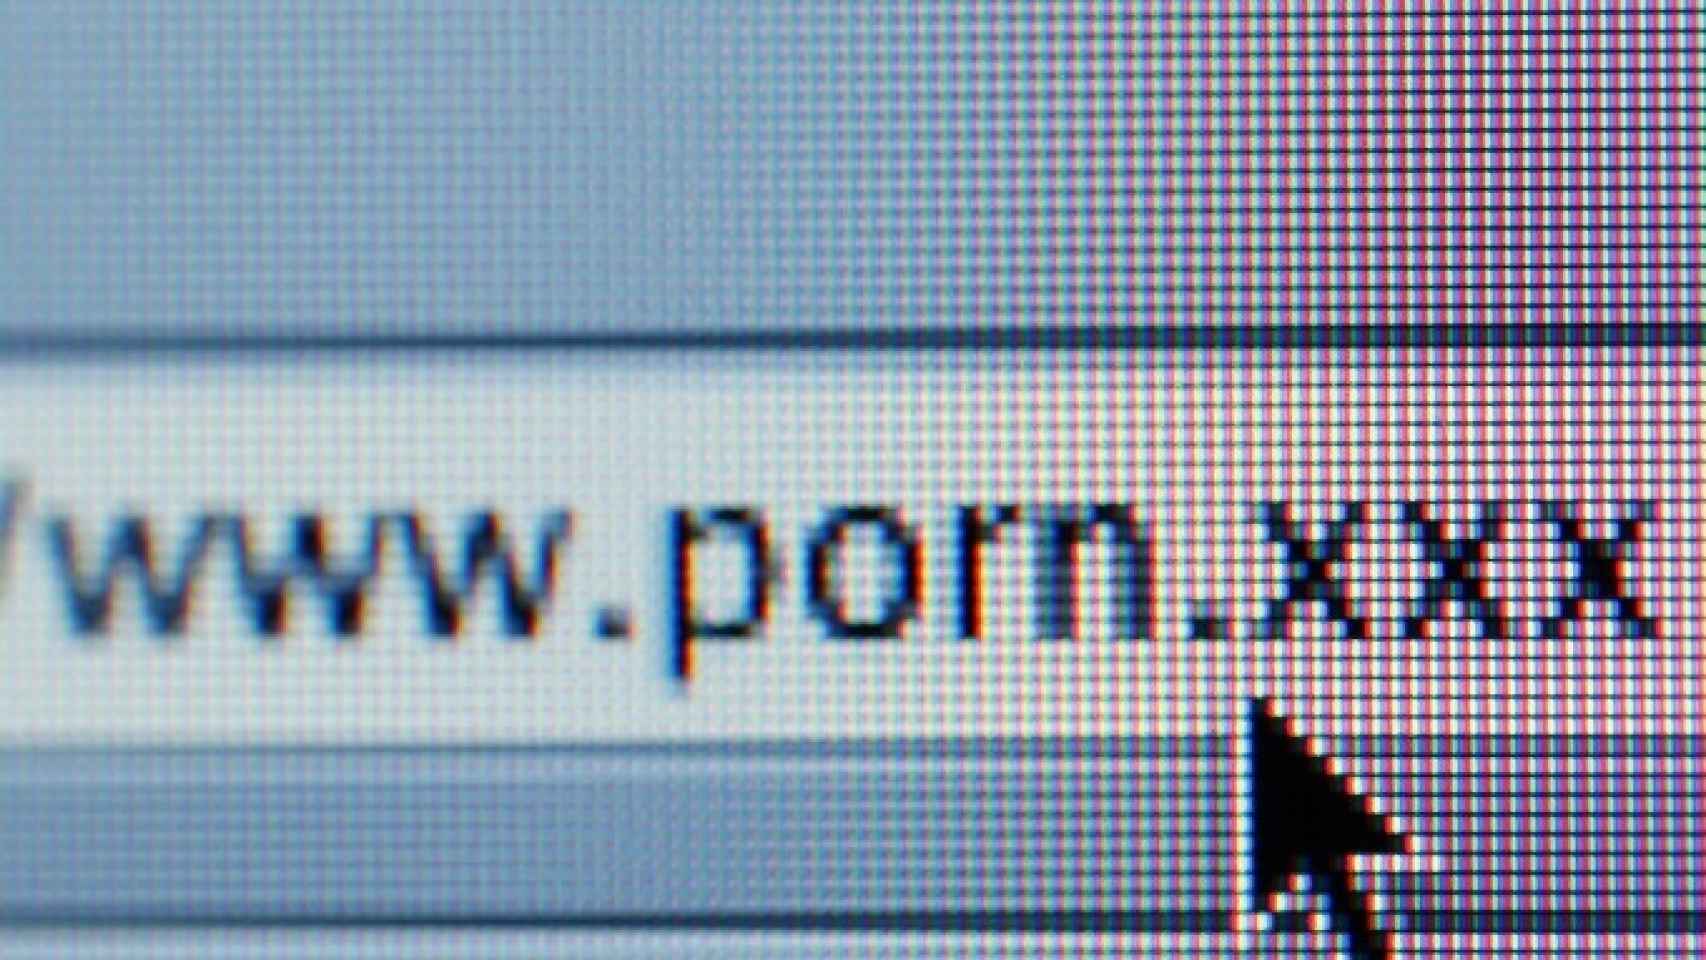 1706px x 960px - El Reino Unido tendrÃ¡ que desbloquear pÃ¡ginas incluidas injustamente en el  filtro anti-porno